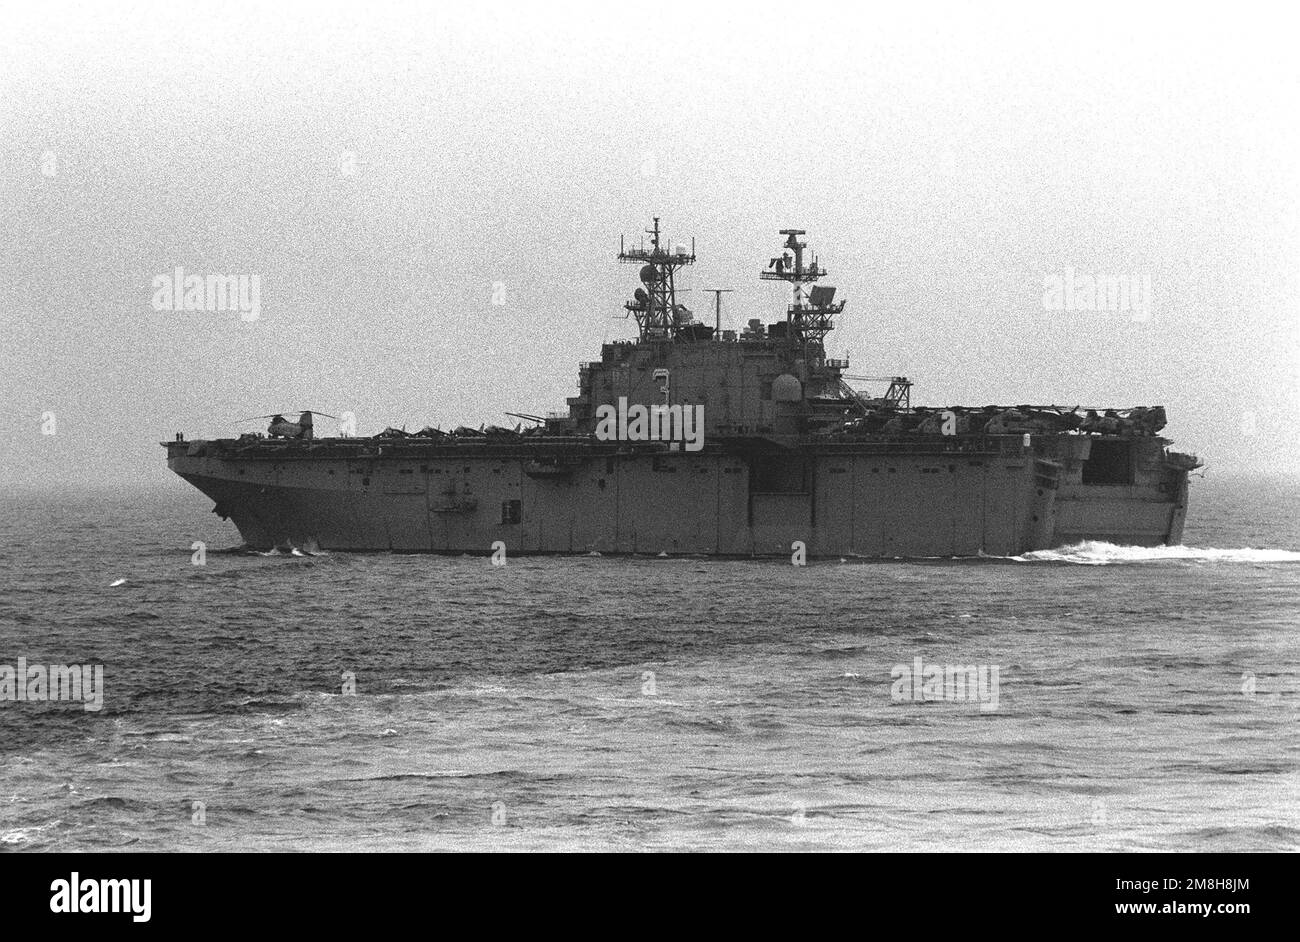 Vue du quartier portuaire du navire d'assaut amphibie USS BELLEAU WOOD (LHA-3) en cours pendant les opérations de patrouille au large de la République de Corée du Sud. Pays: Mer du Japon Banque D'Images